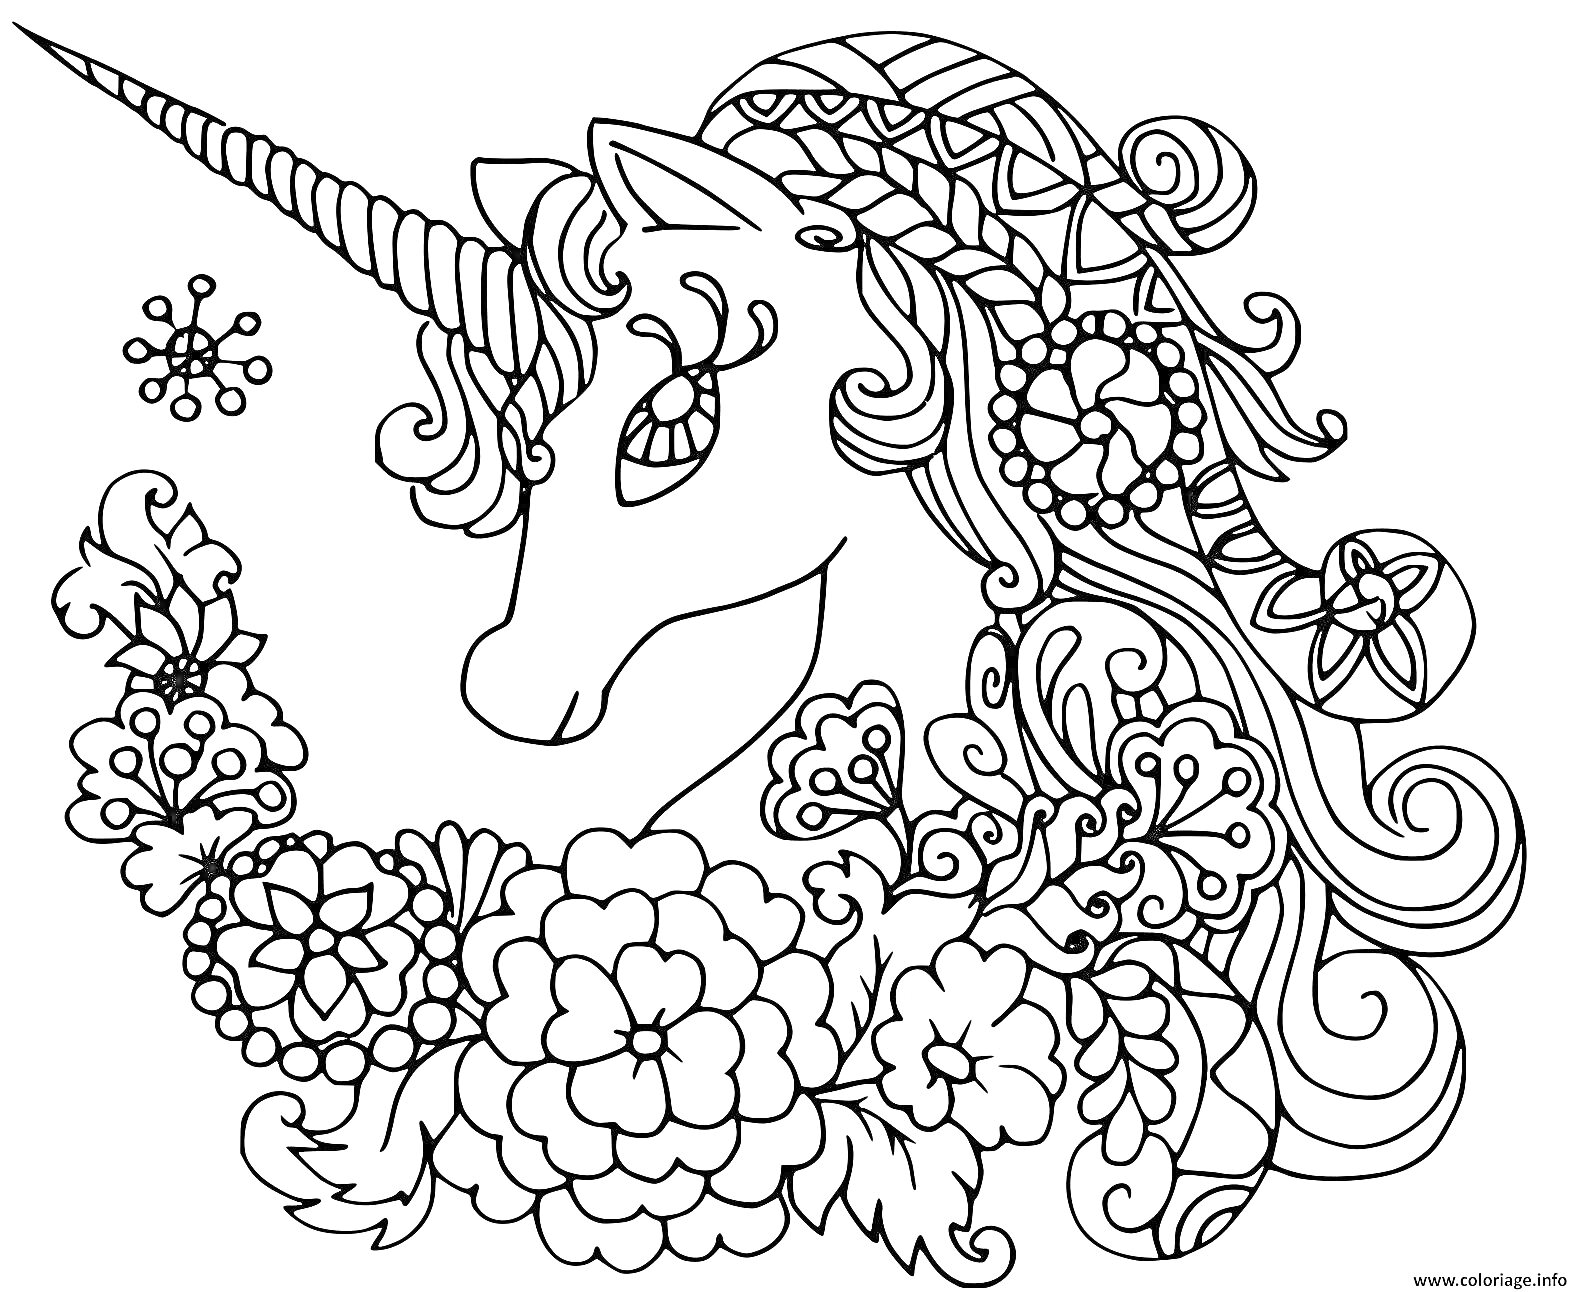 Раскраска Единорог среди цветов и узоров антистресс